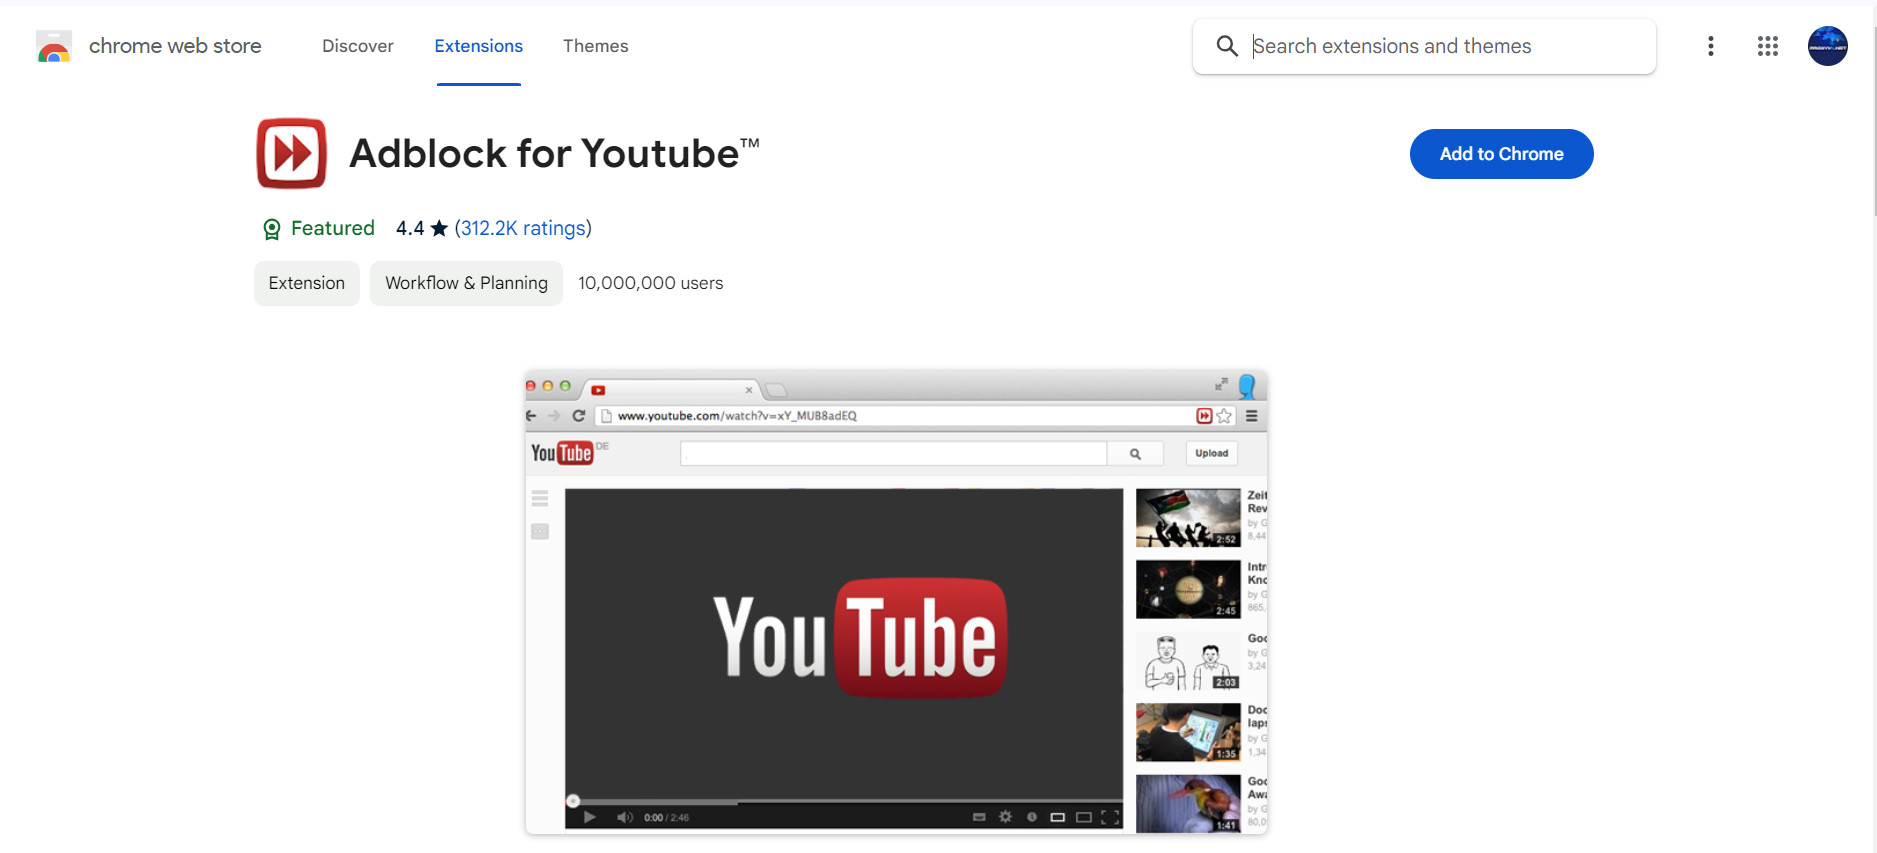 Method 3: Use the YouTube ad blocking utility